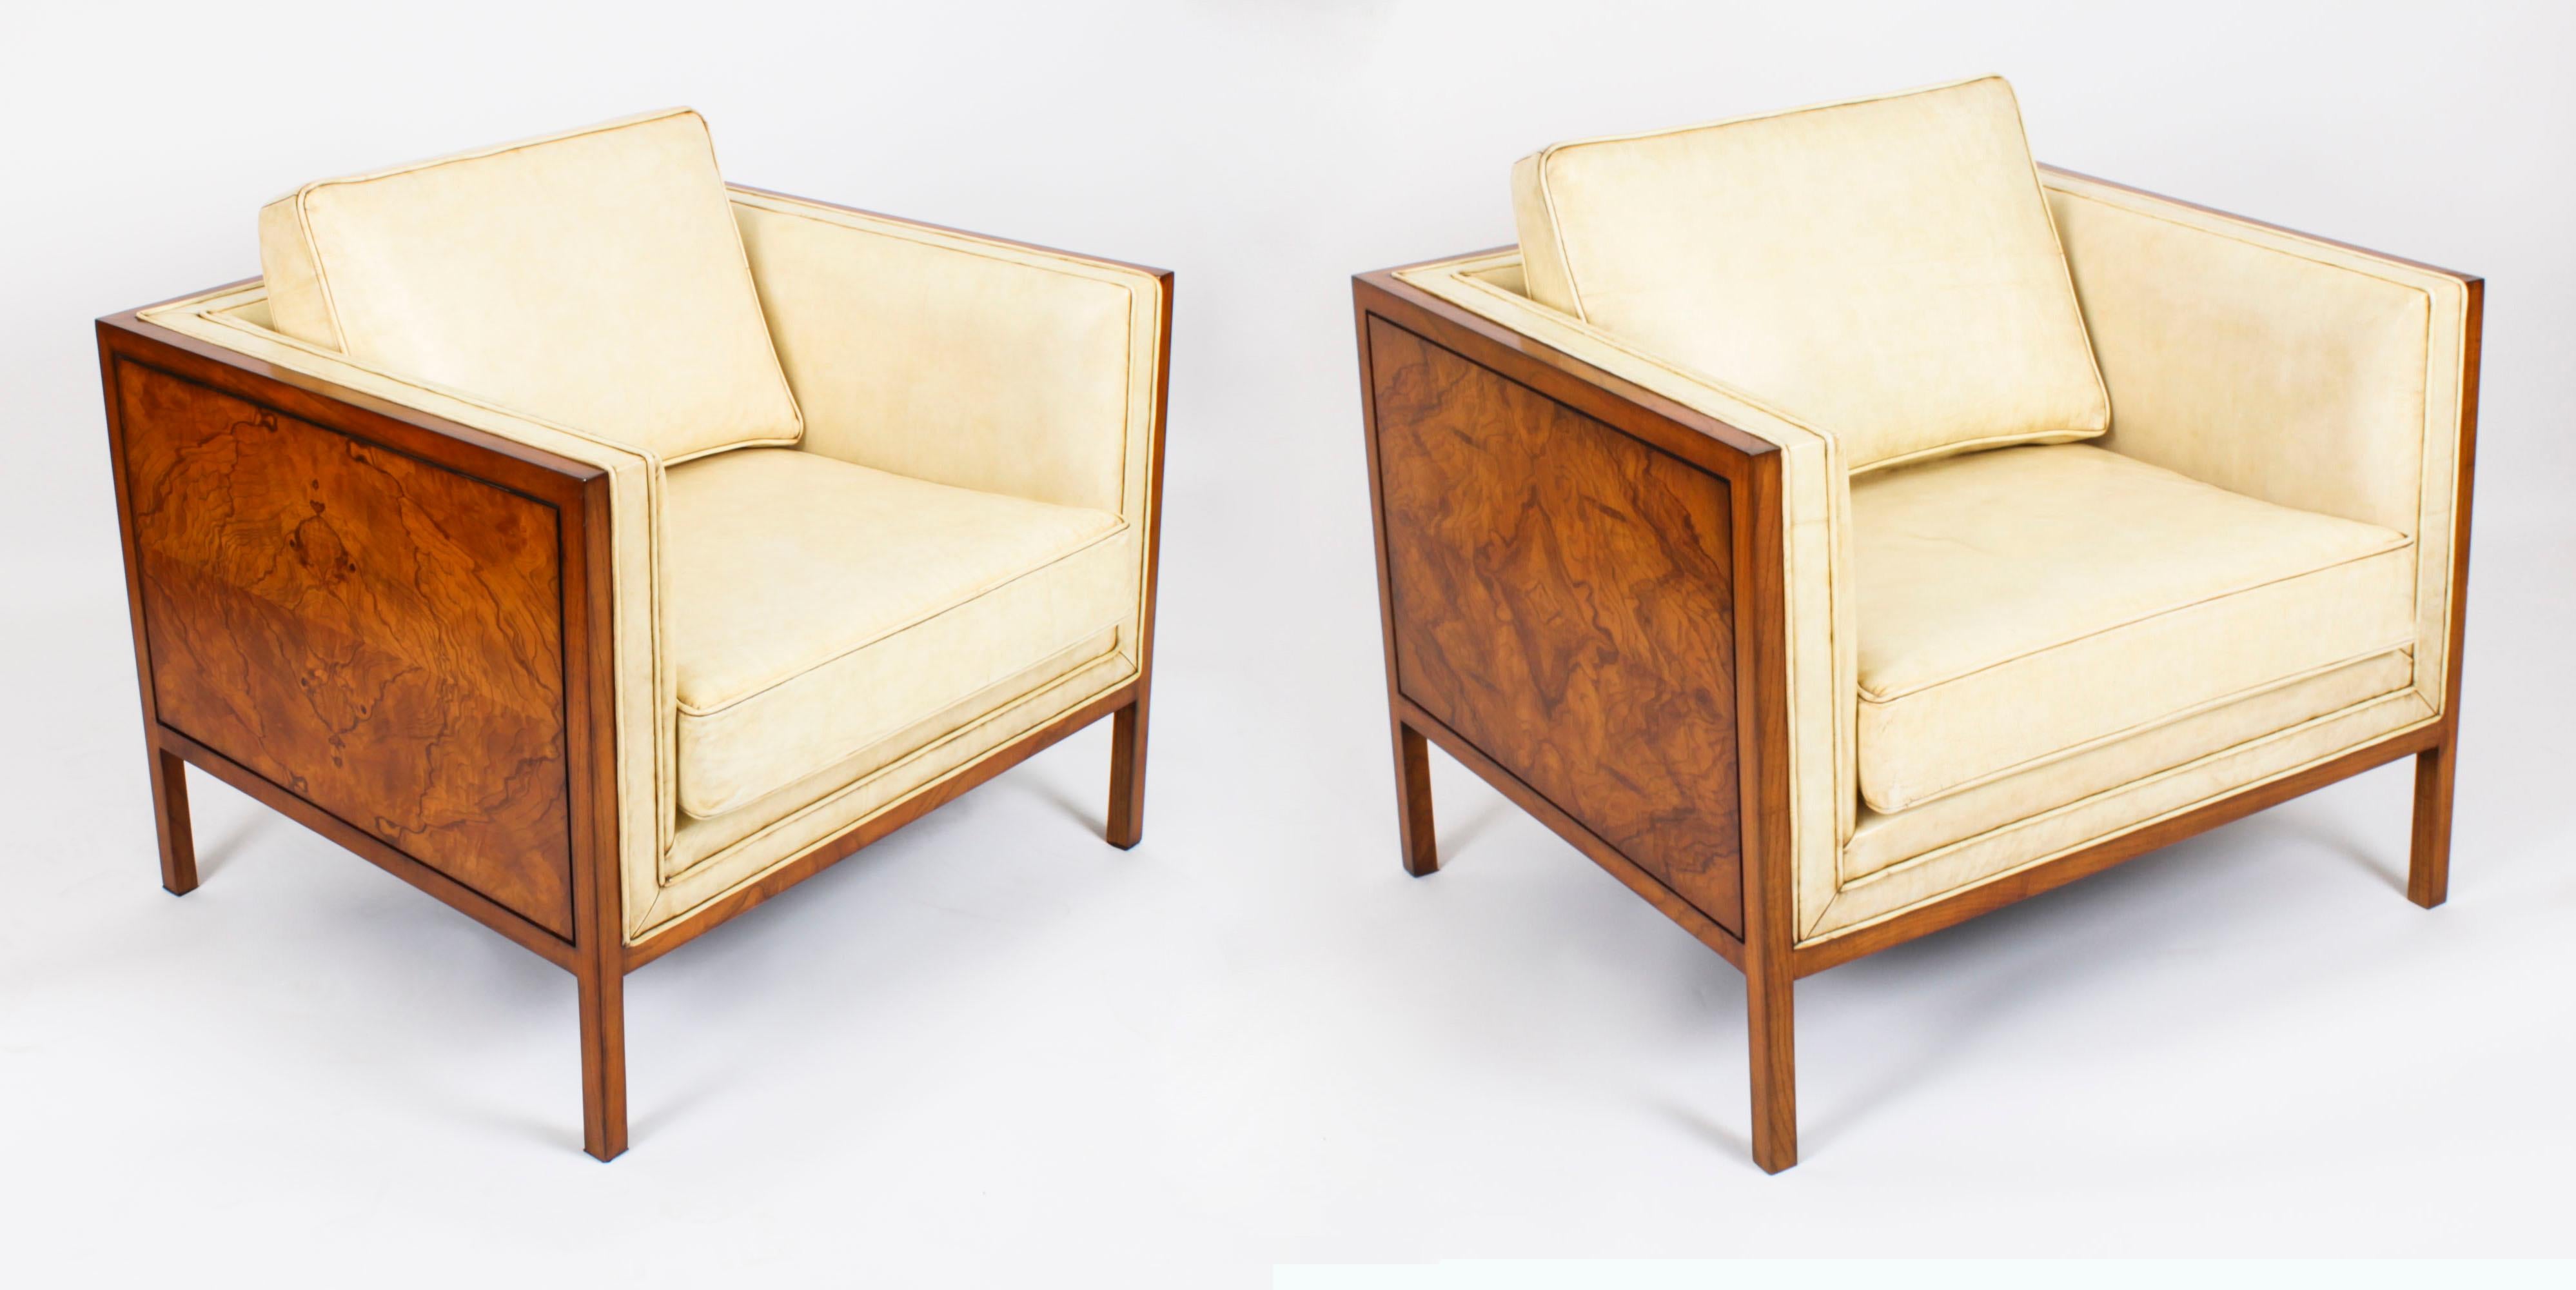 Dies ist ein stilvolles antikes Paar Art Deco Sessel in Wurzelnuss und Nussbaum, die in einem luxuriösen Creme Leder mit Creme Leder Keder gepolstert worden sind, um 1920 in Datum

Dieses sehr bequeme Sesselpaar ist mit dekorativen Paneelen aus